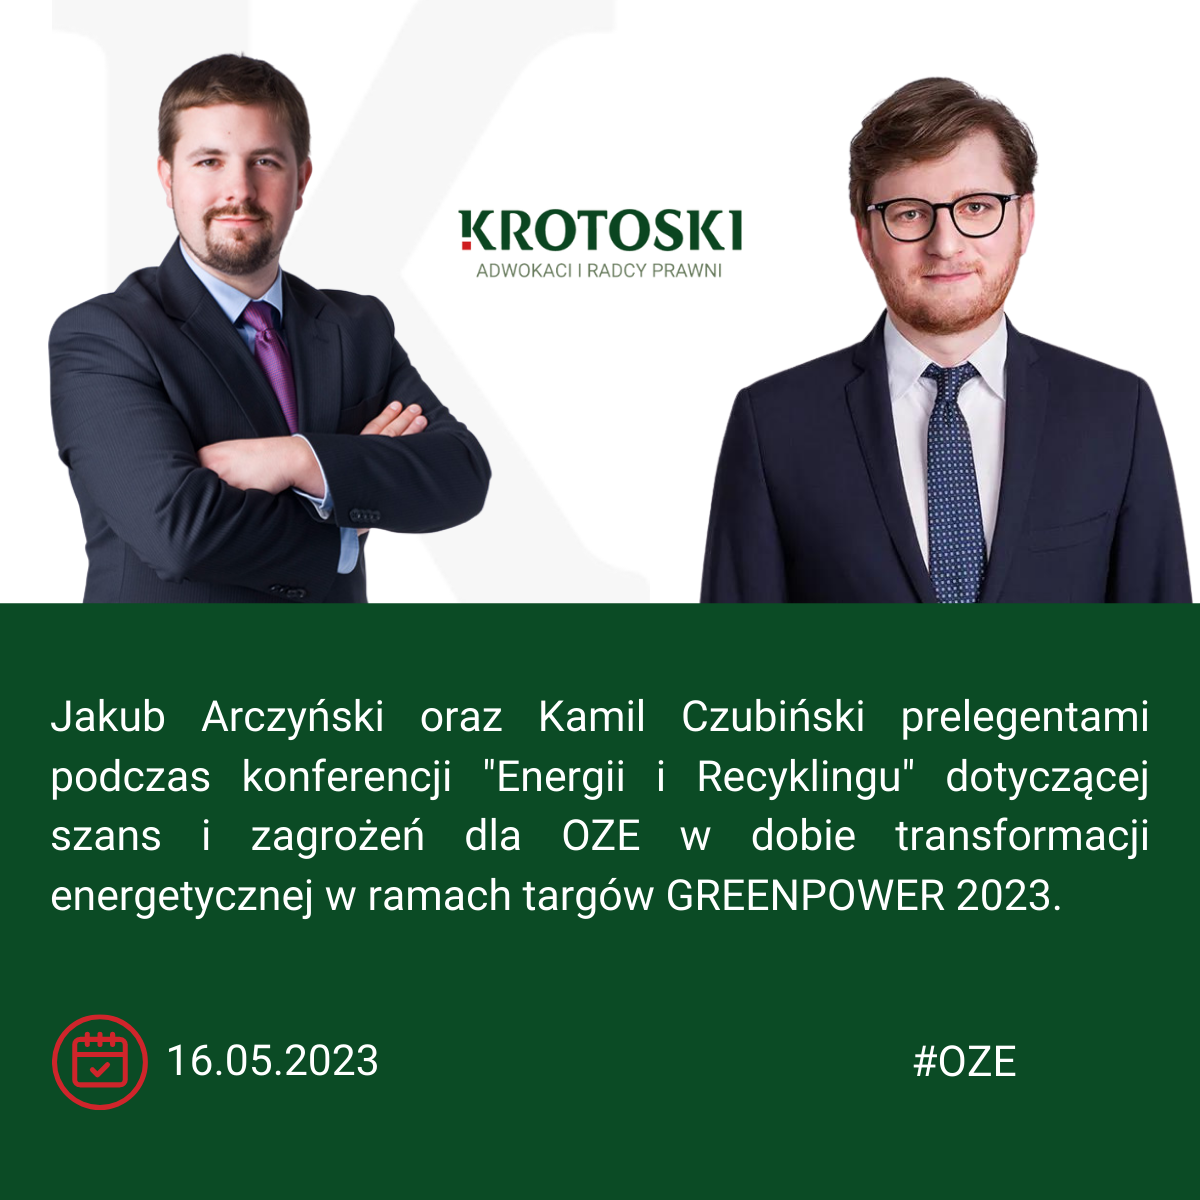 Jakub Arczyński i Kamil Czubiński prelegentami podczas targów GREENPOWER 2023